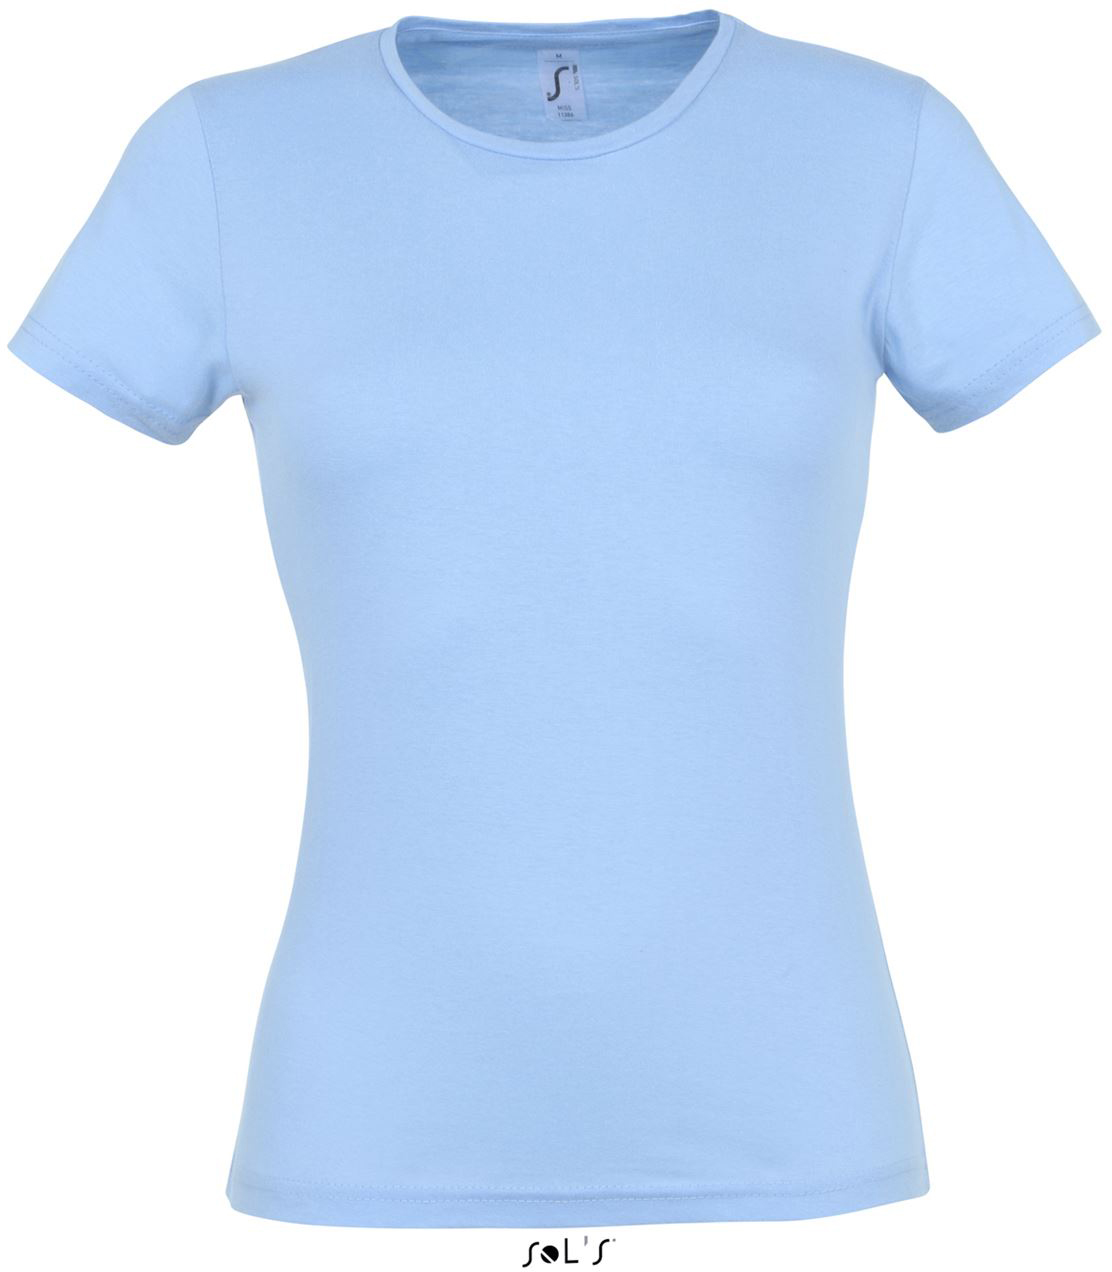 Sol's Miss - Women’s T-shirt - Sol's Miss - Women’s T-shirt - Light Blue